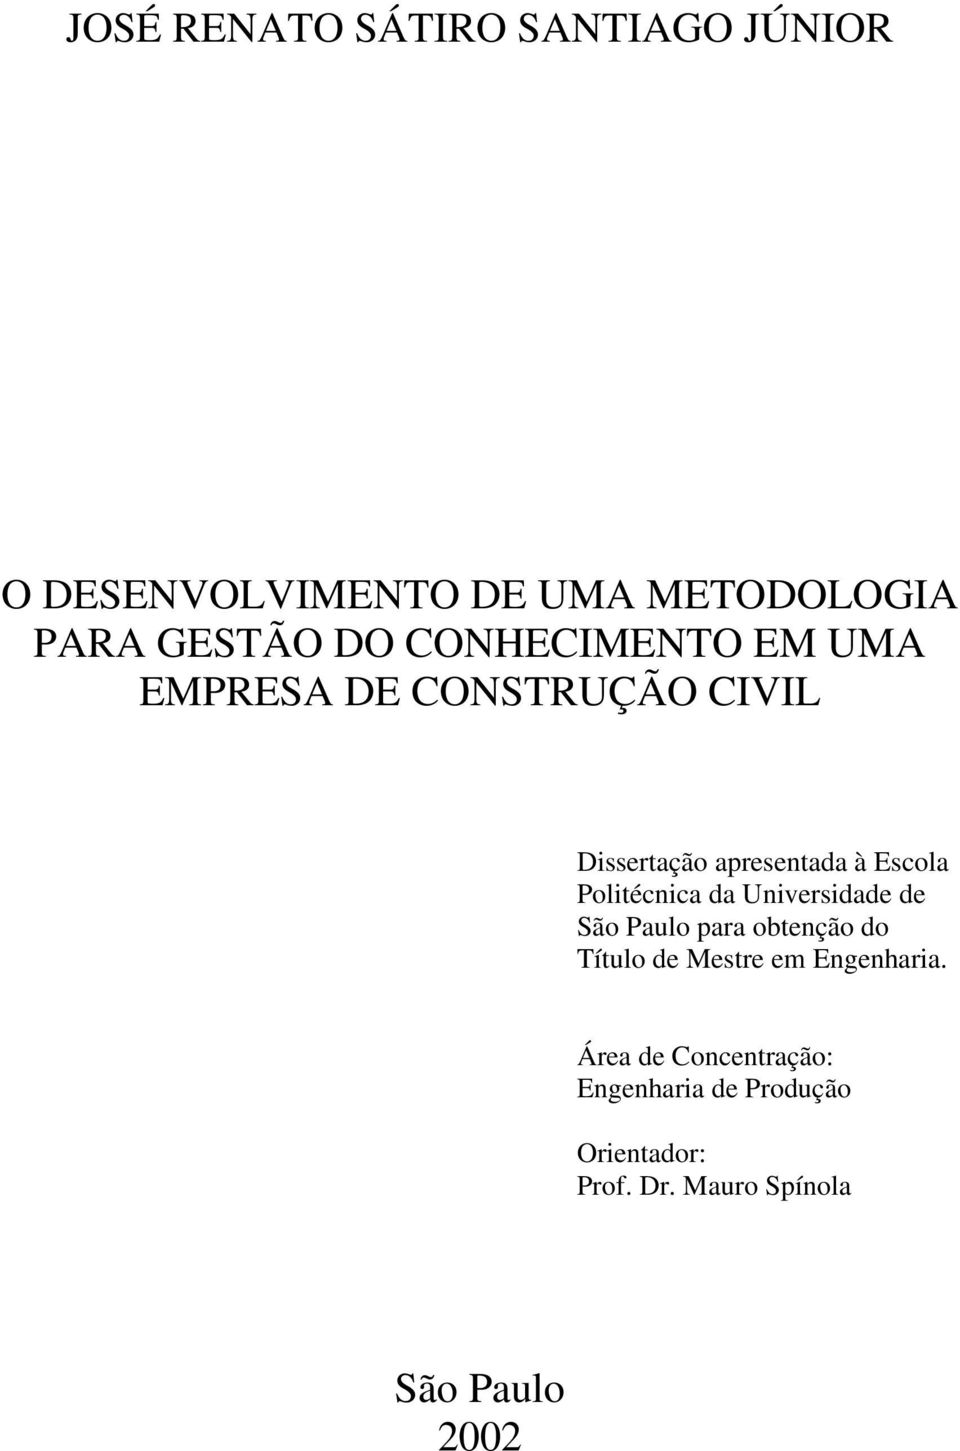 Politécnica da Universidade de São Paulo para obtenção do Título de Mestre em Engenharia.